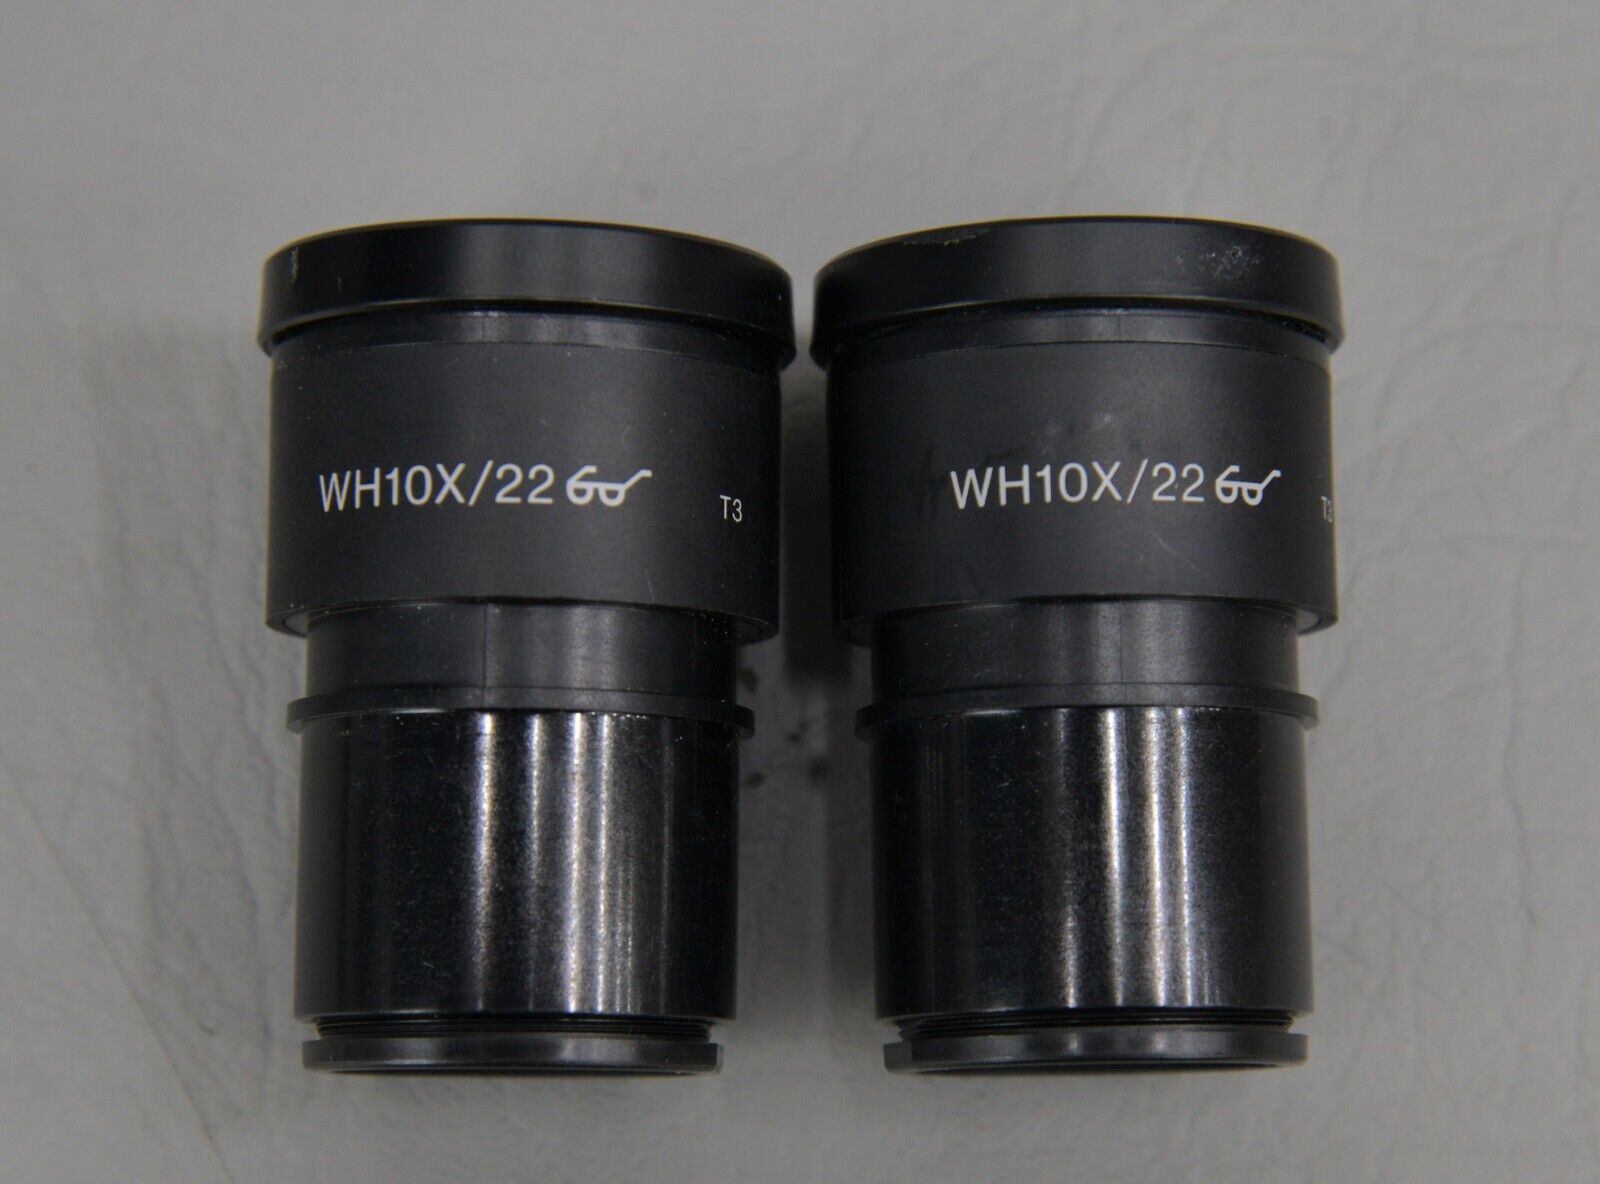 Olympus BX51 Upright Microscope BX51TF w/ 40x & (2) 100x Objectives